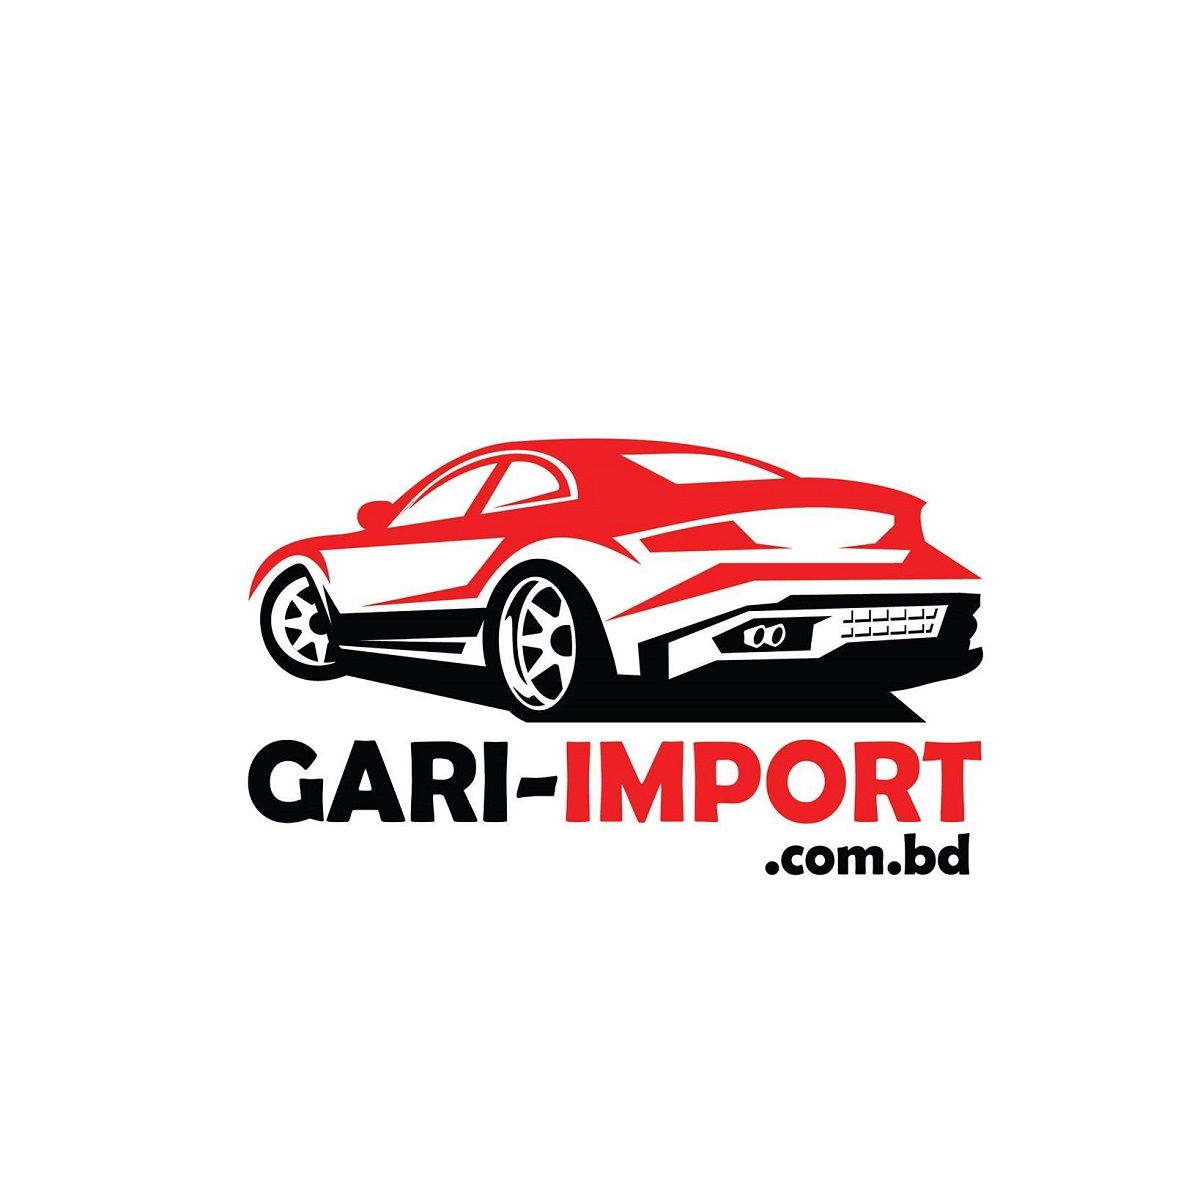 GARI-IMPORT.com.bd